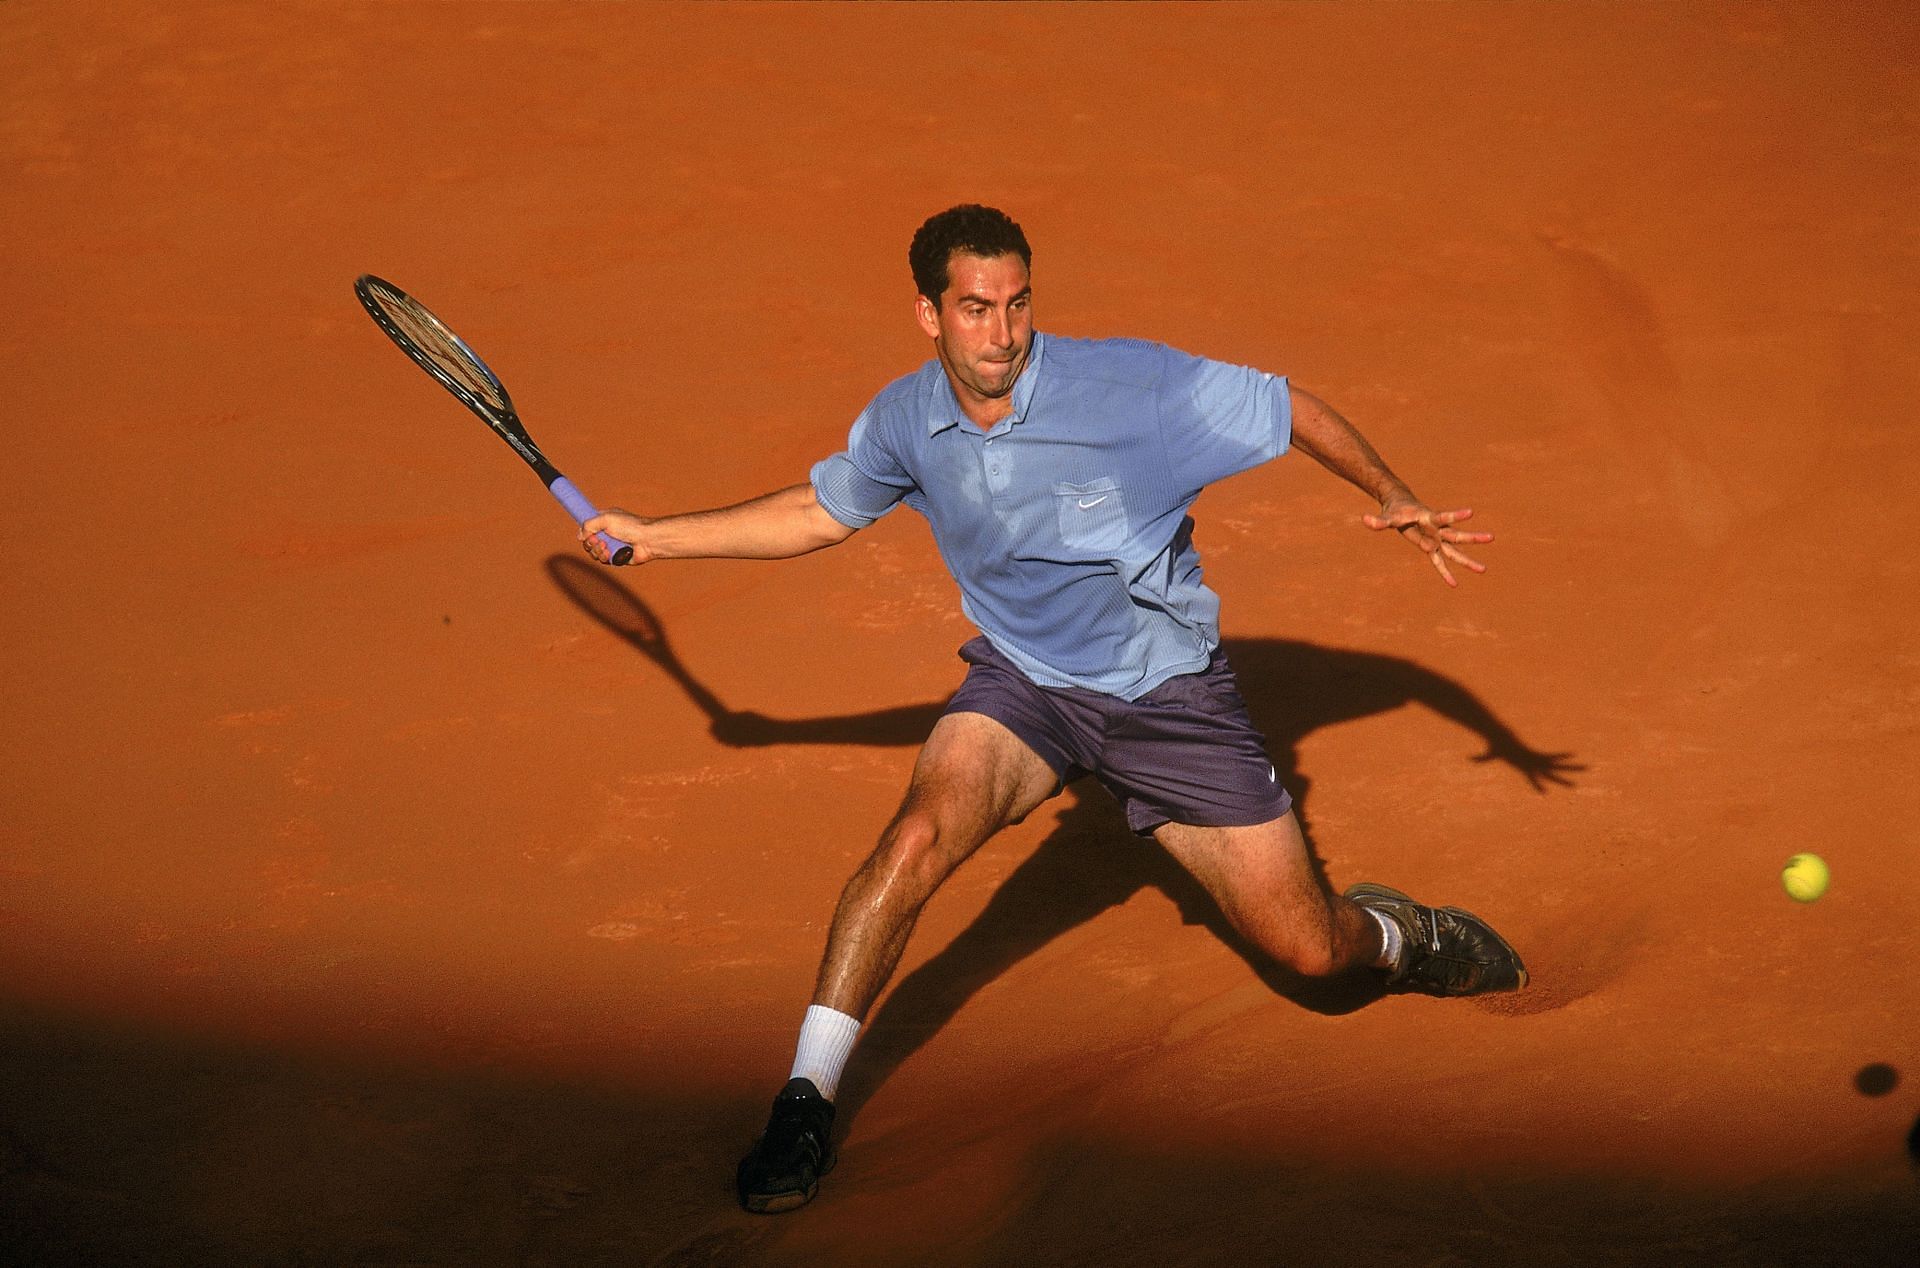 Albert Costa won his lone Roland Garros title in 2002